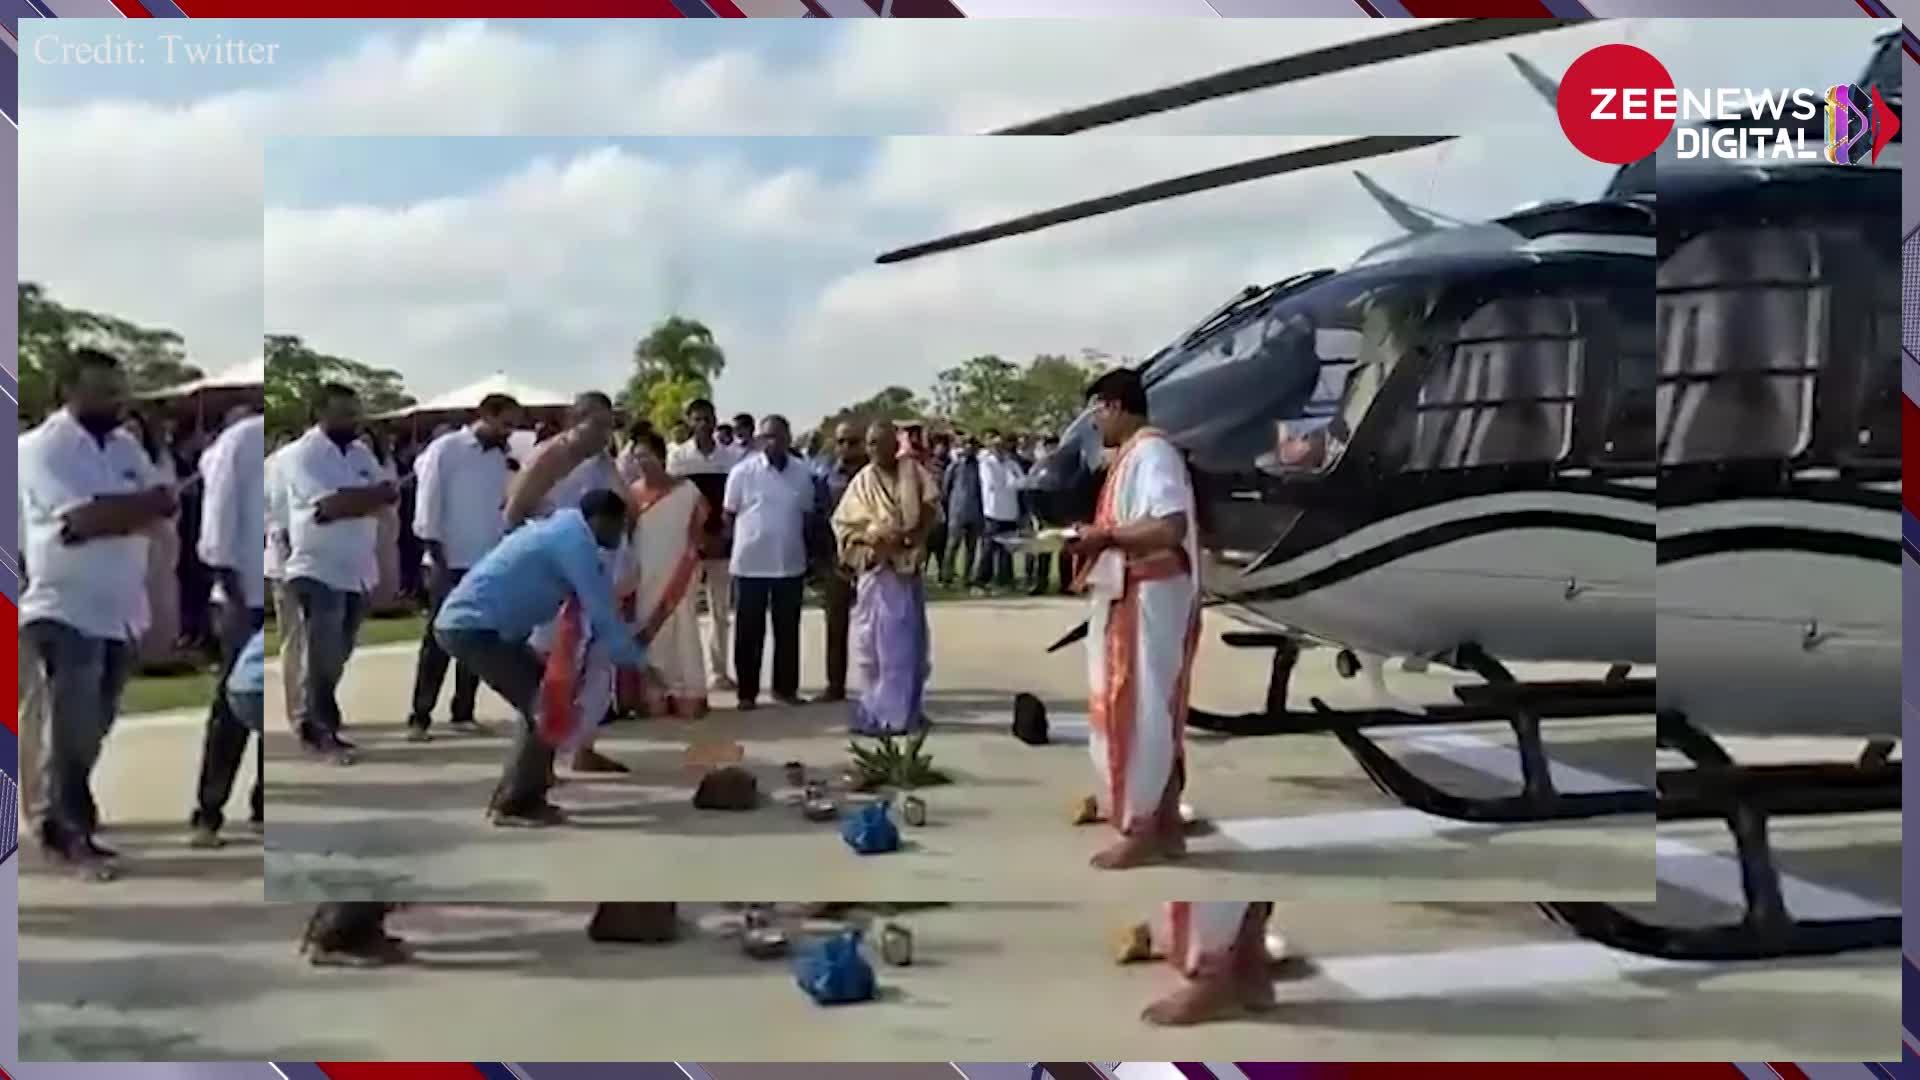 Helicopter Video: हैदराबाद के बिजनेसमैन ने की 47 करोड़ के हलिकाॅप्टर की पूजा, देख हर कोई रह गया दंग